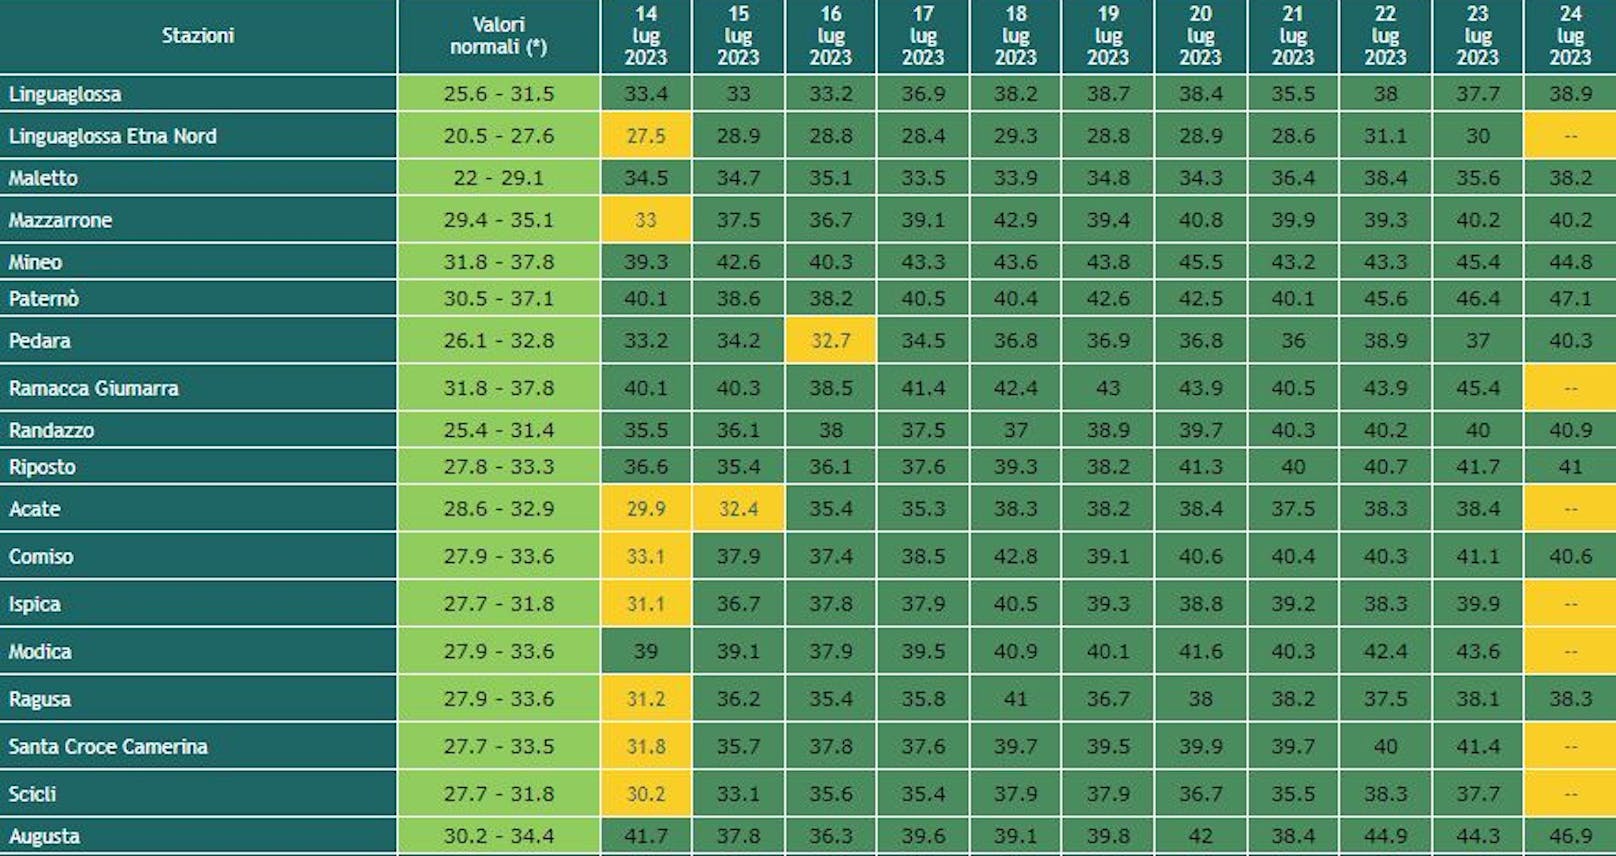 <strong>Tageshöchstwerte</strong> aller SIAS-Wetterstationen <strong>Siziliens zwischen 14. und 24. Juli 2023</strong>. Grüne Spalte = üblicher Temperaturbereich (Valori normali) für die Jahreszeit, dunkelgrün = heißer, hellgrün = kühler, orange = im Bereich.